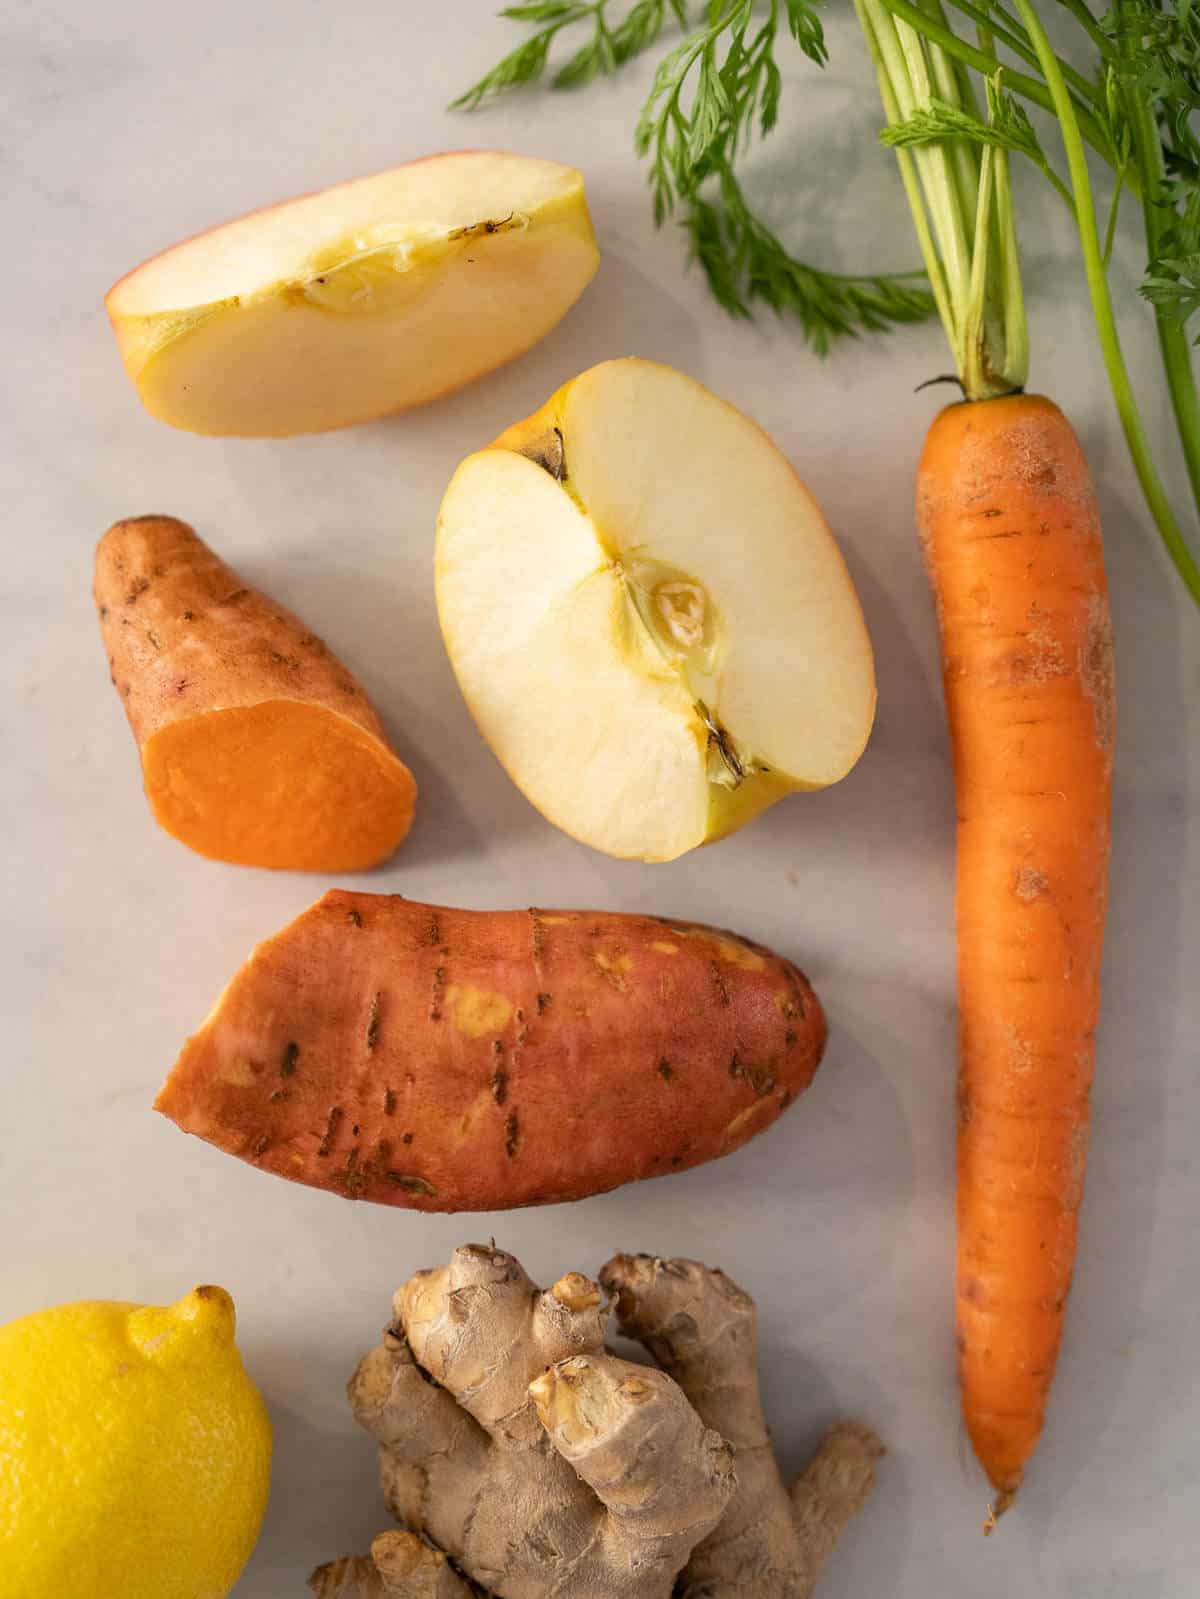 ingredientes preparados para hacer zumo de zanahoria, manzana y boniato.